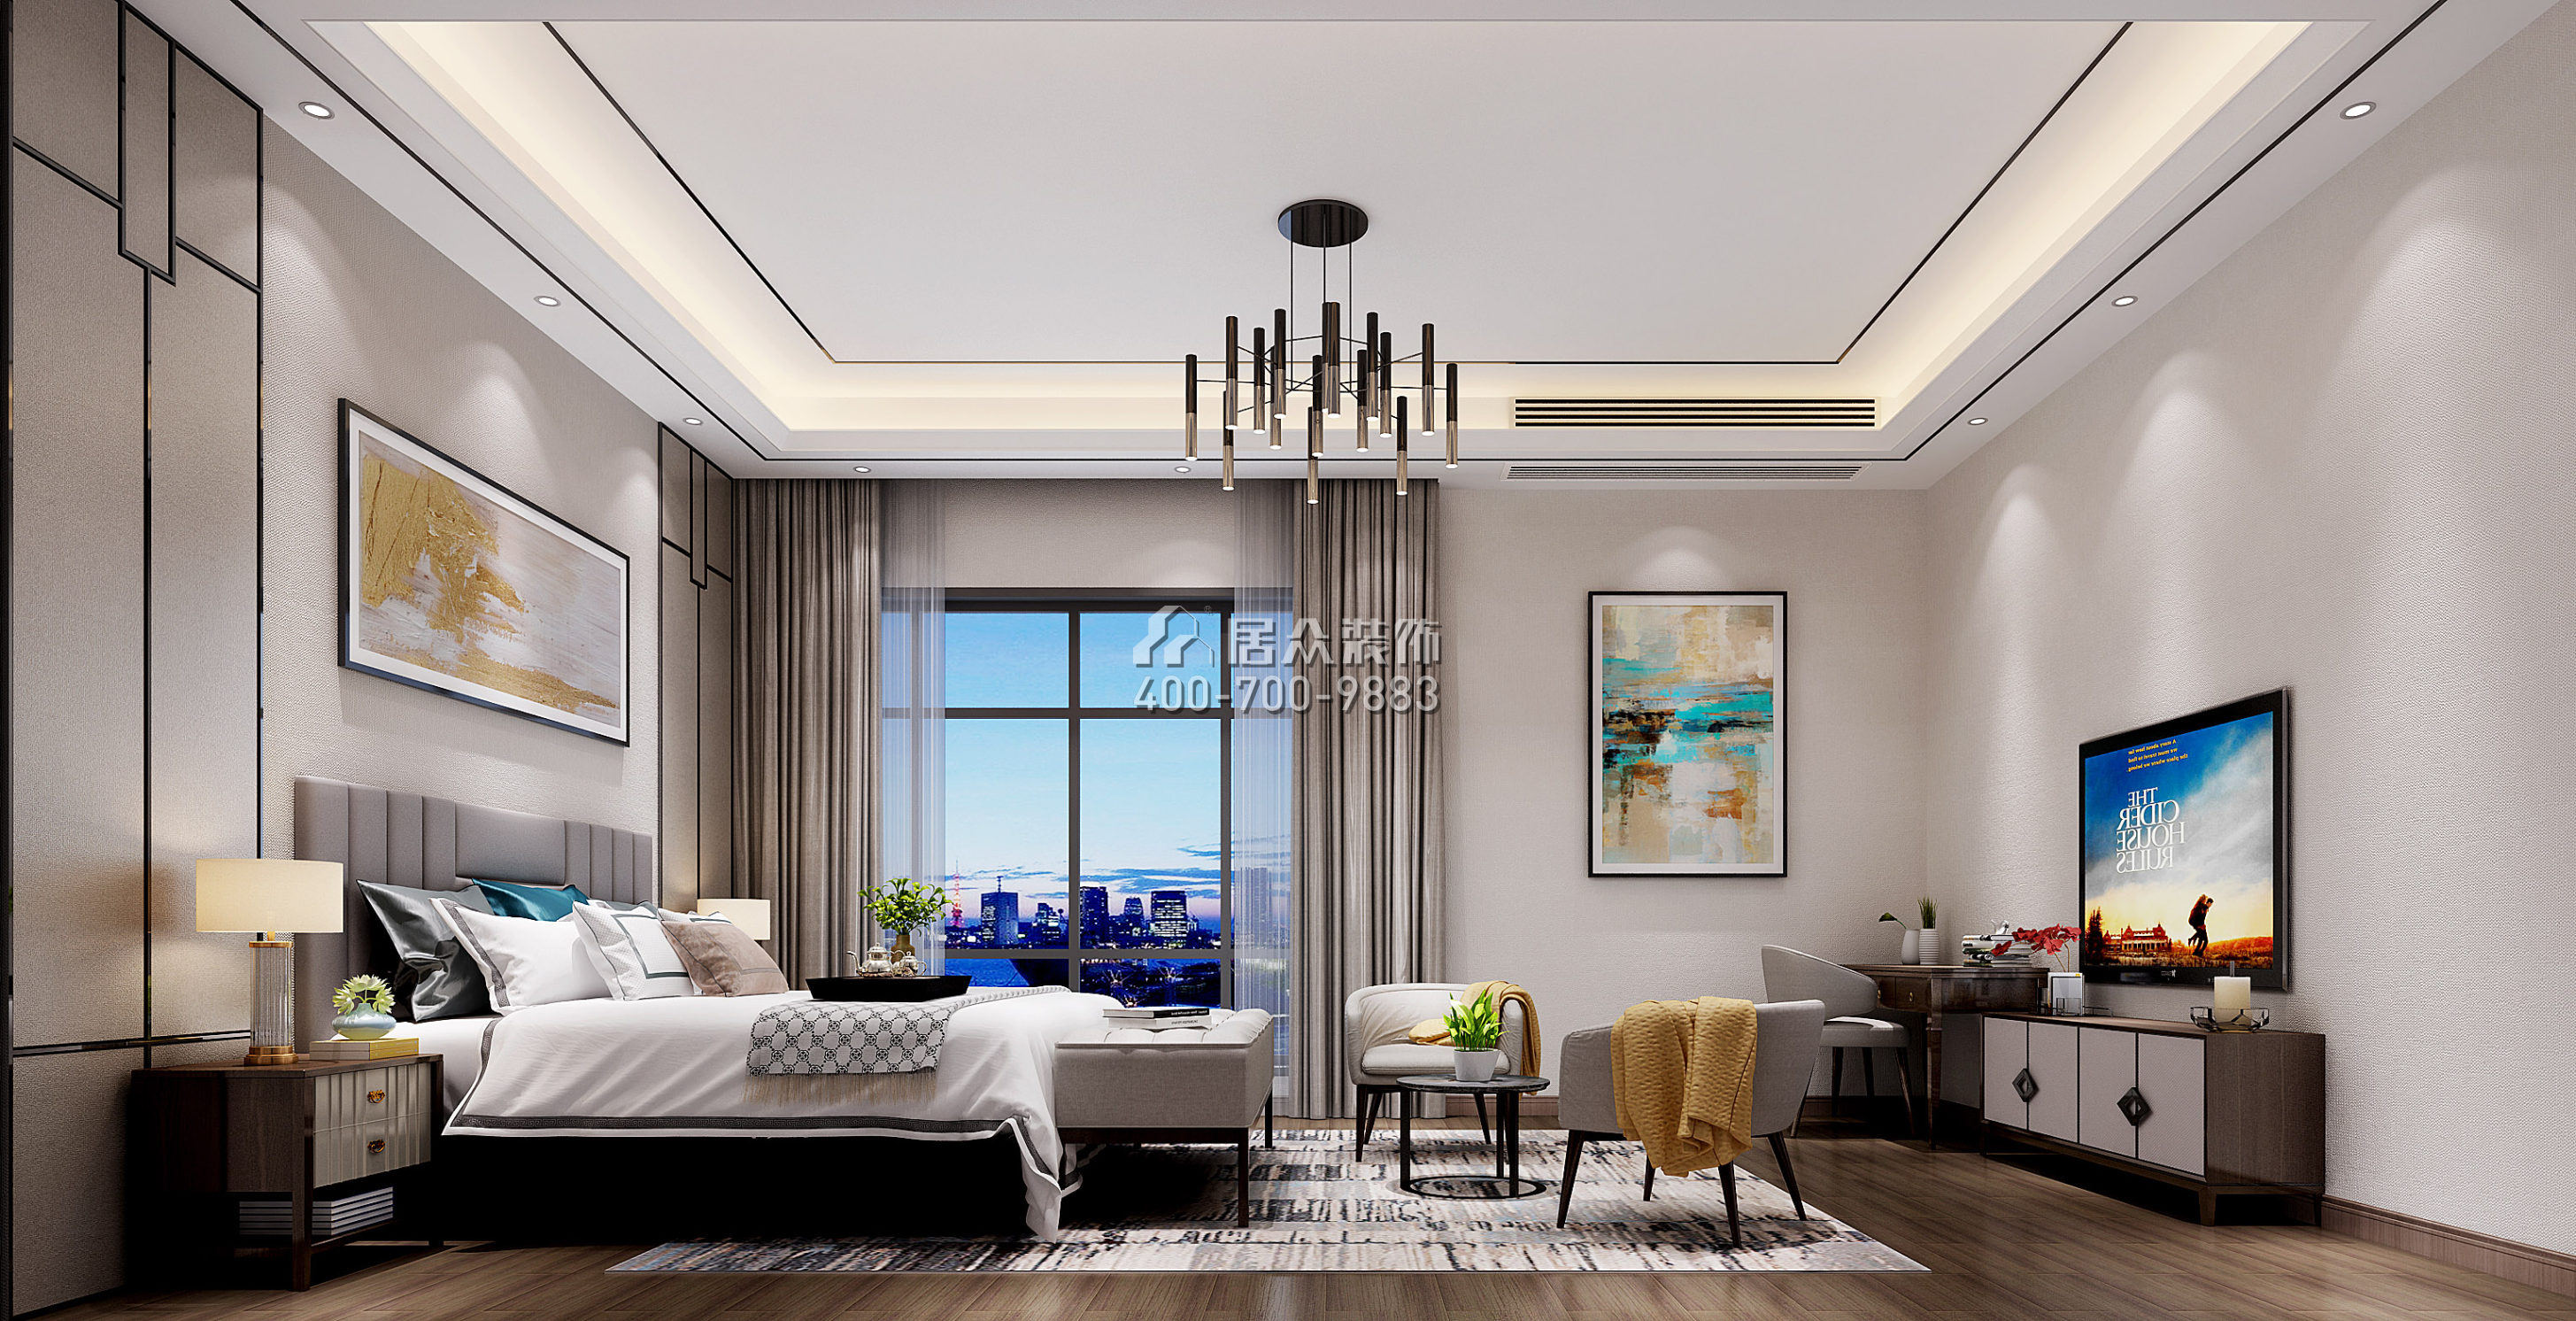 万科棠樾203平方米中式风格别墅户型卧室装修效果图